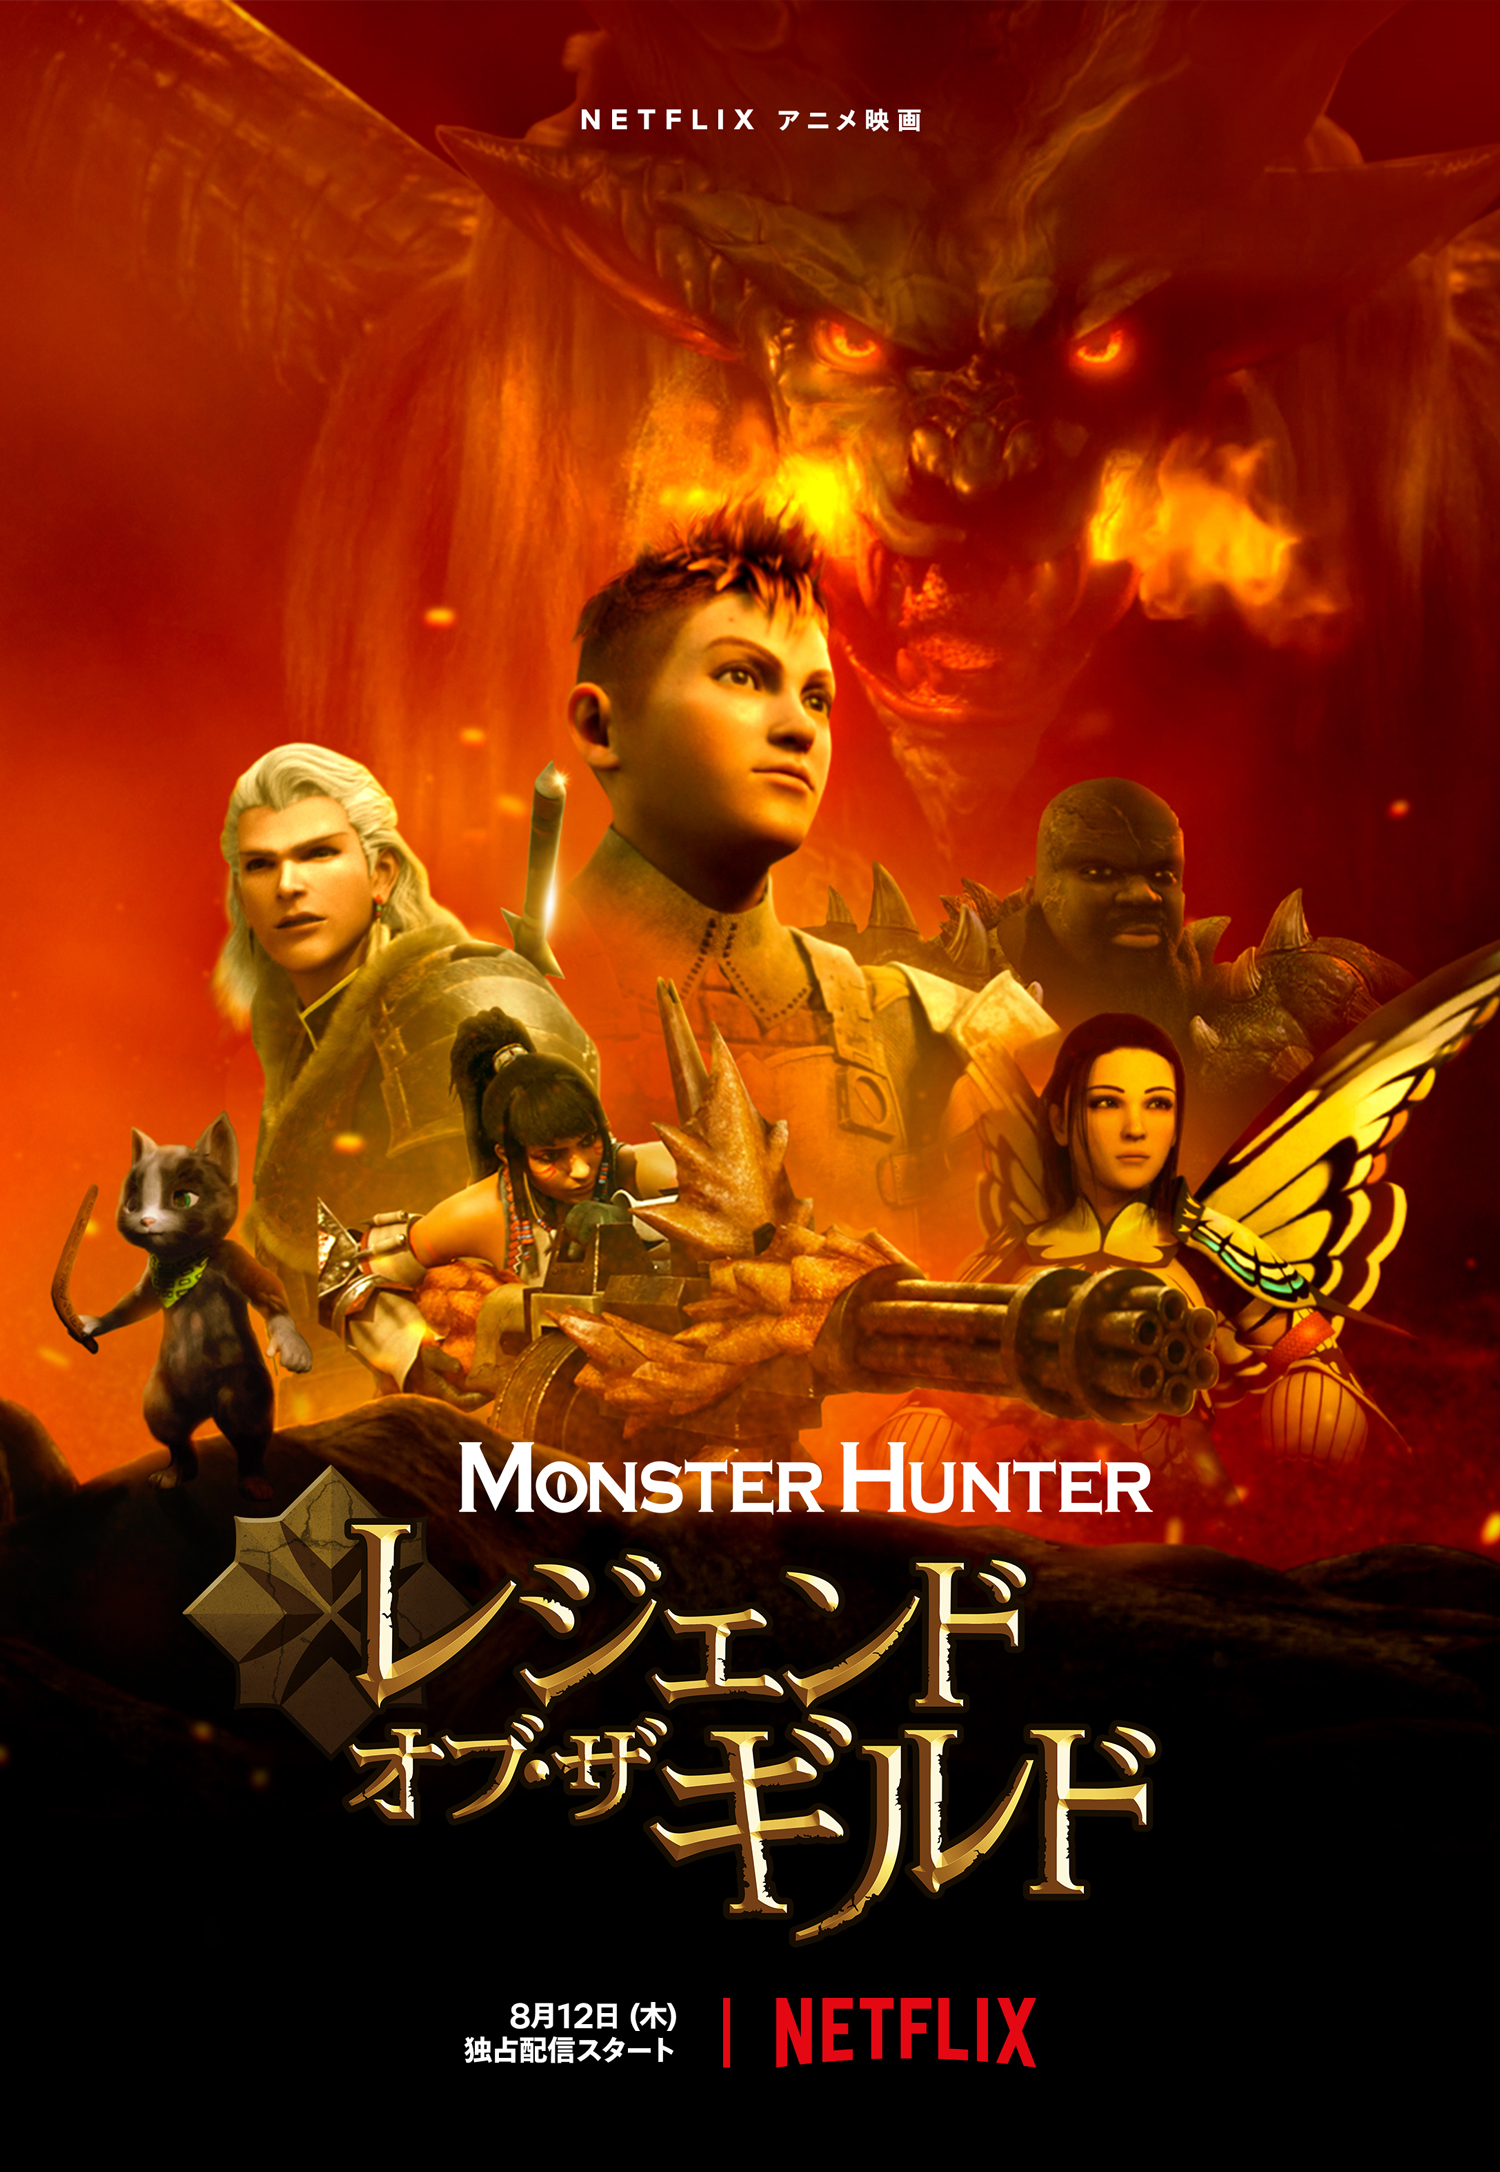 شکارچی هیولا : افسانه های صنف (Monster Hunter: Legends of the Guild)